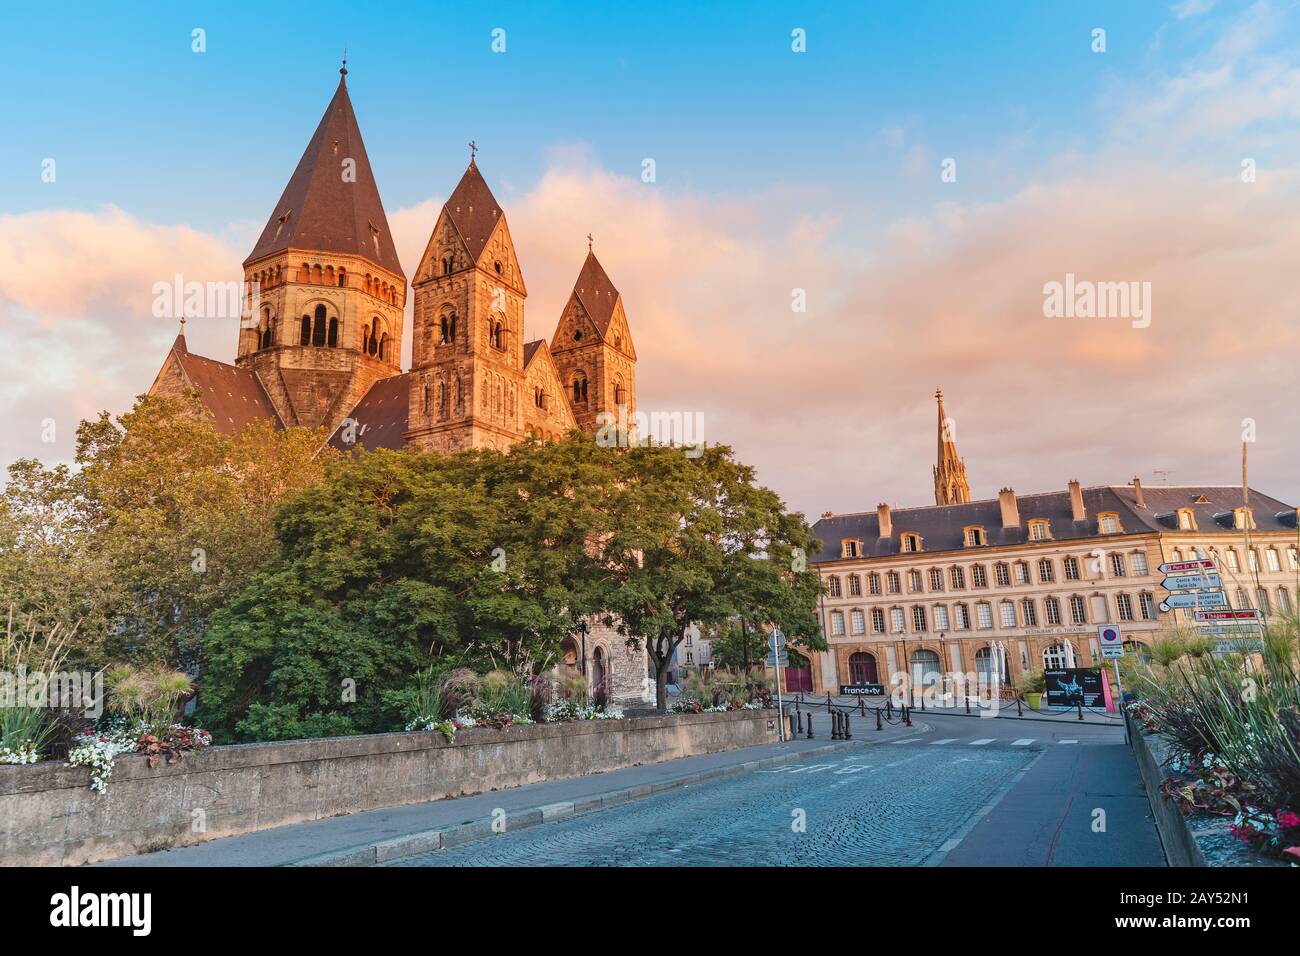 1 août 2019, Metz, France : la rue de la ville mène à l'ancienne église du Temple neuf au lever du soleil Banque D'Images